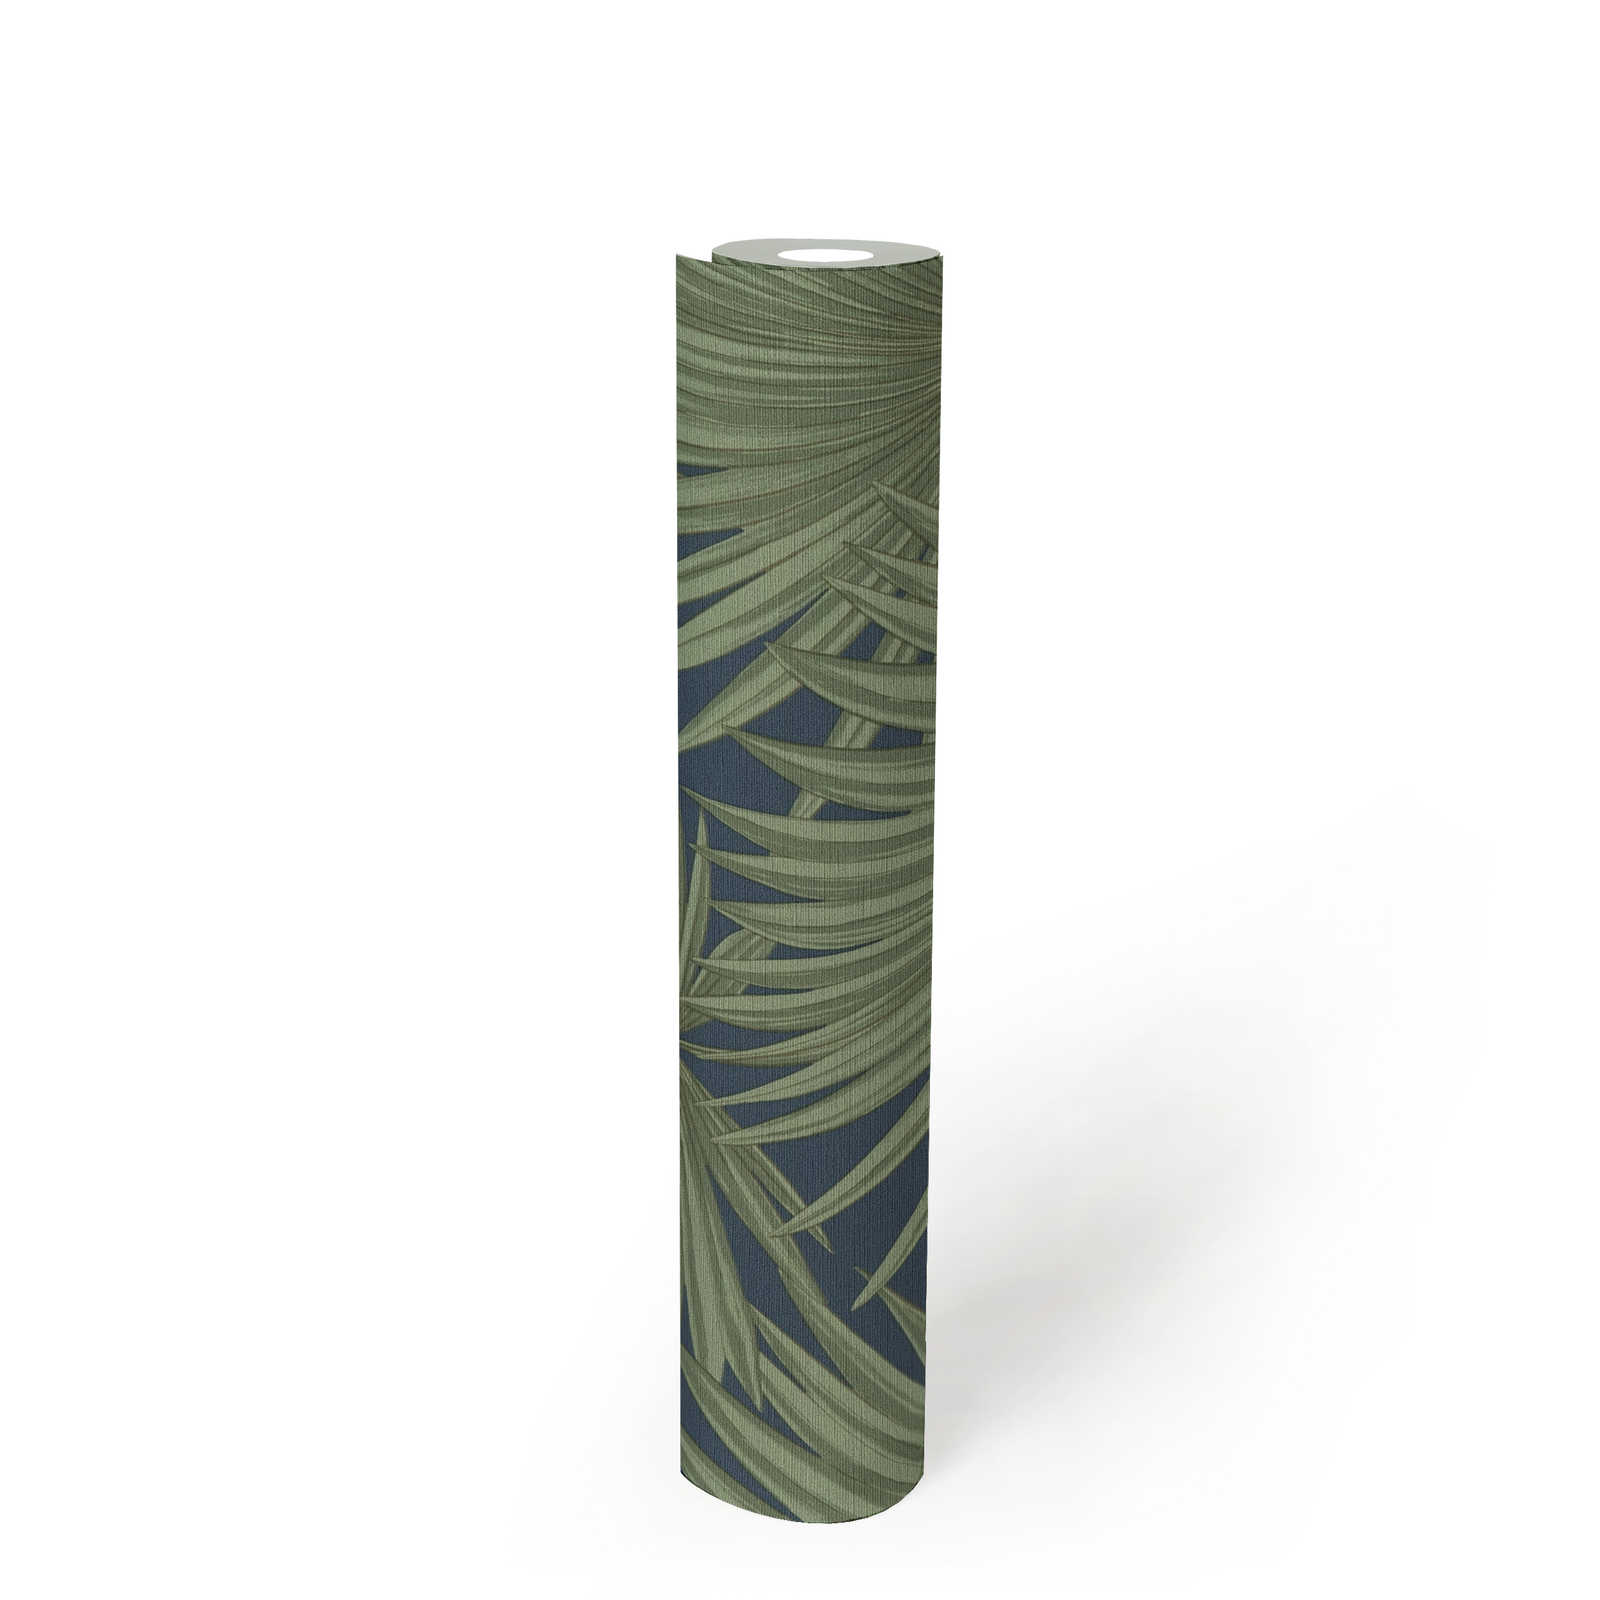             Vliestapete mit Palmblättern auf dezentem Hintergrund – Grün, Blau
        